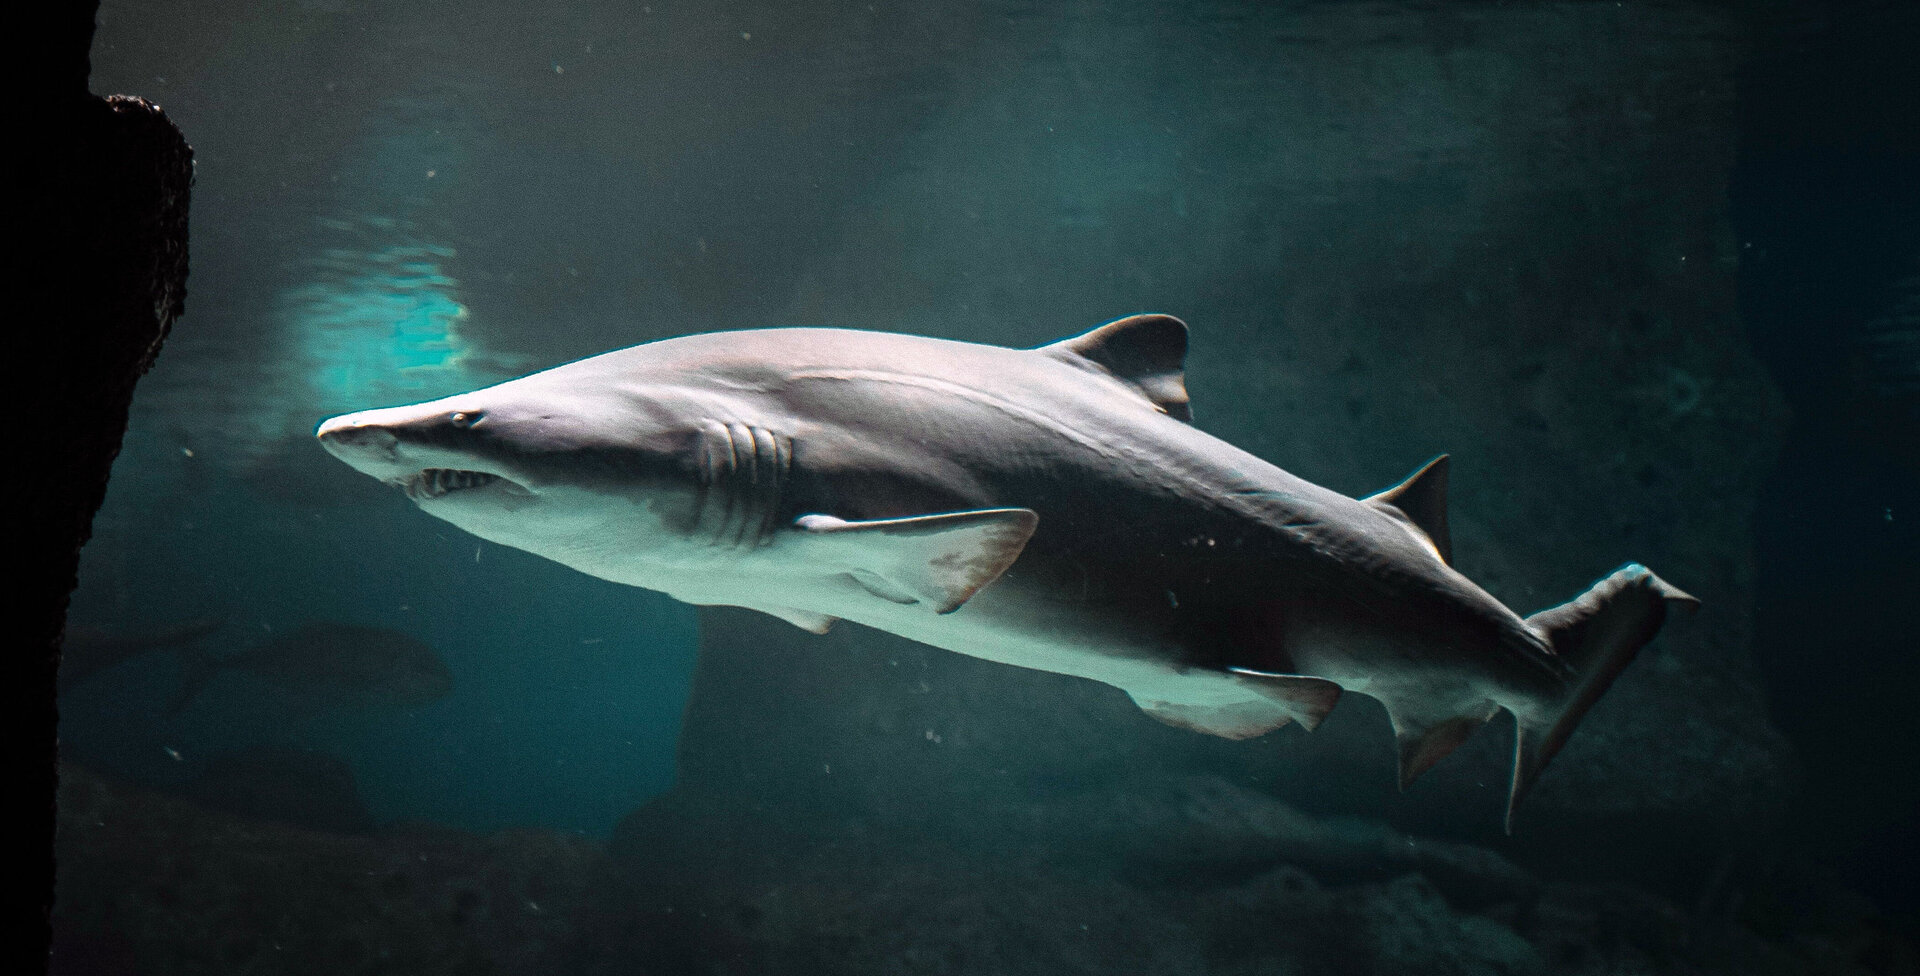 Die Haut von schnellschwimmenden Haien ist mit Riblets versehen, die die oberflächennahe Reibung so reduzieren, dass der Hai bei der Jagd Energie spart. Foto: pexels